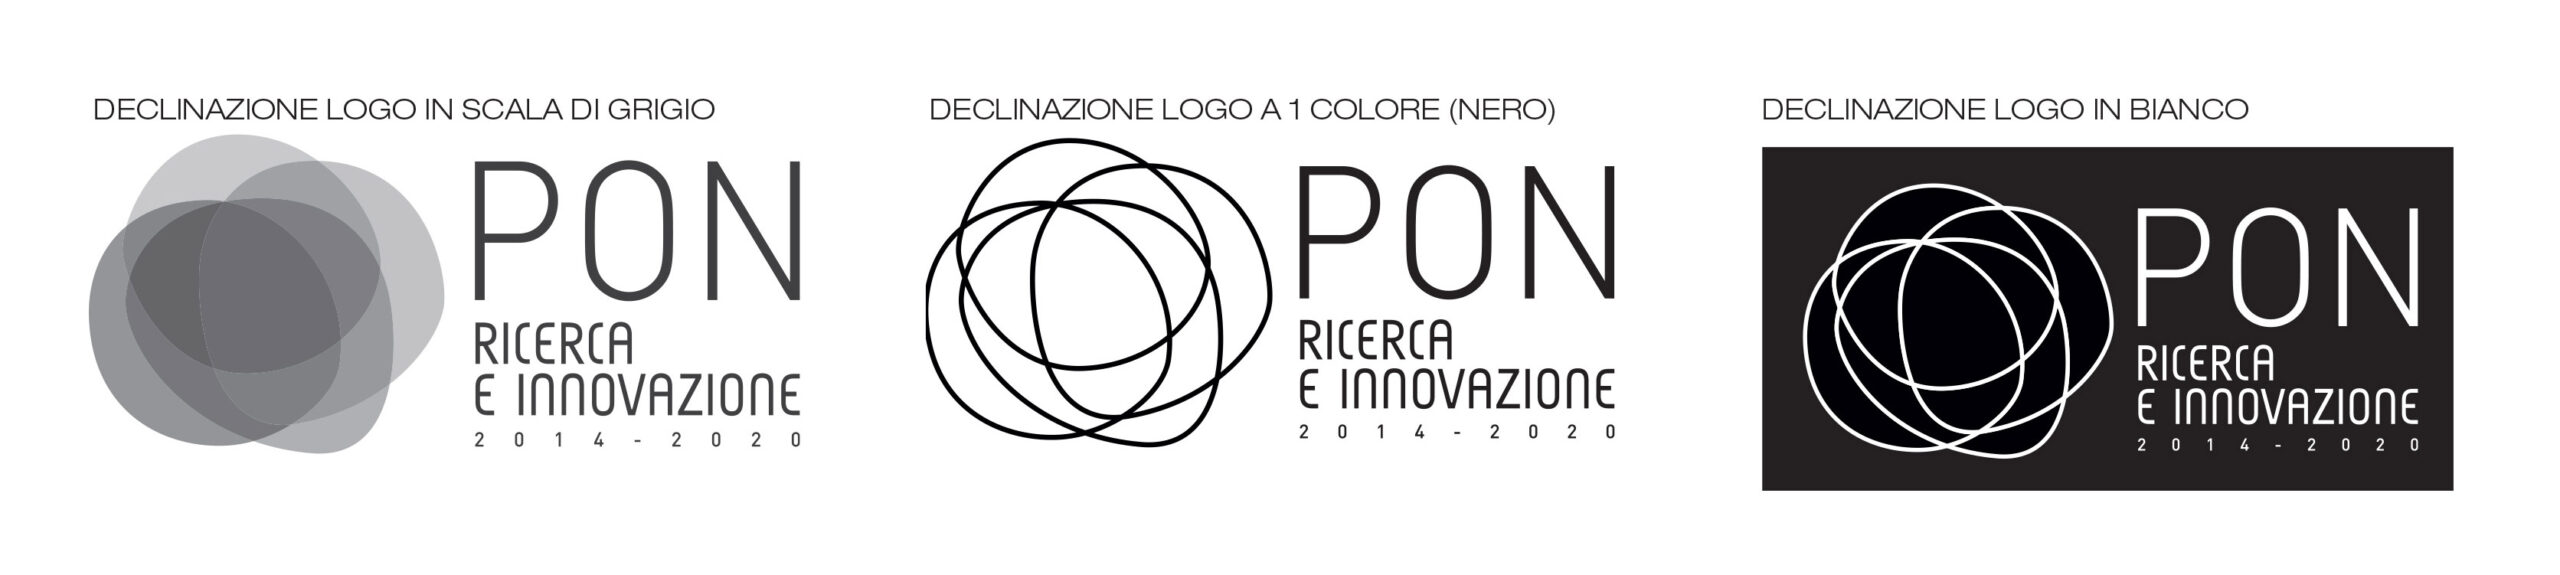 PON logo declinazione notesto scaled